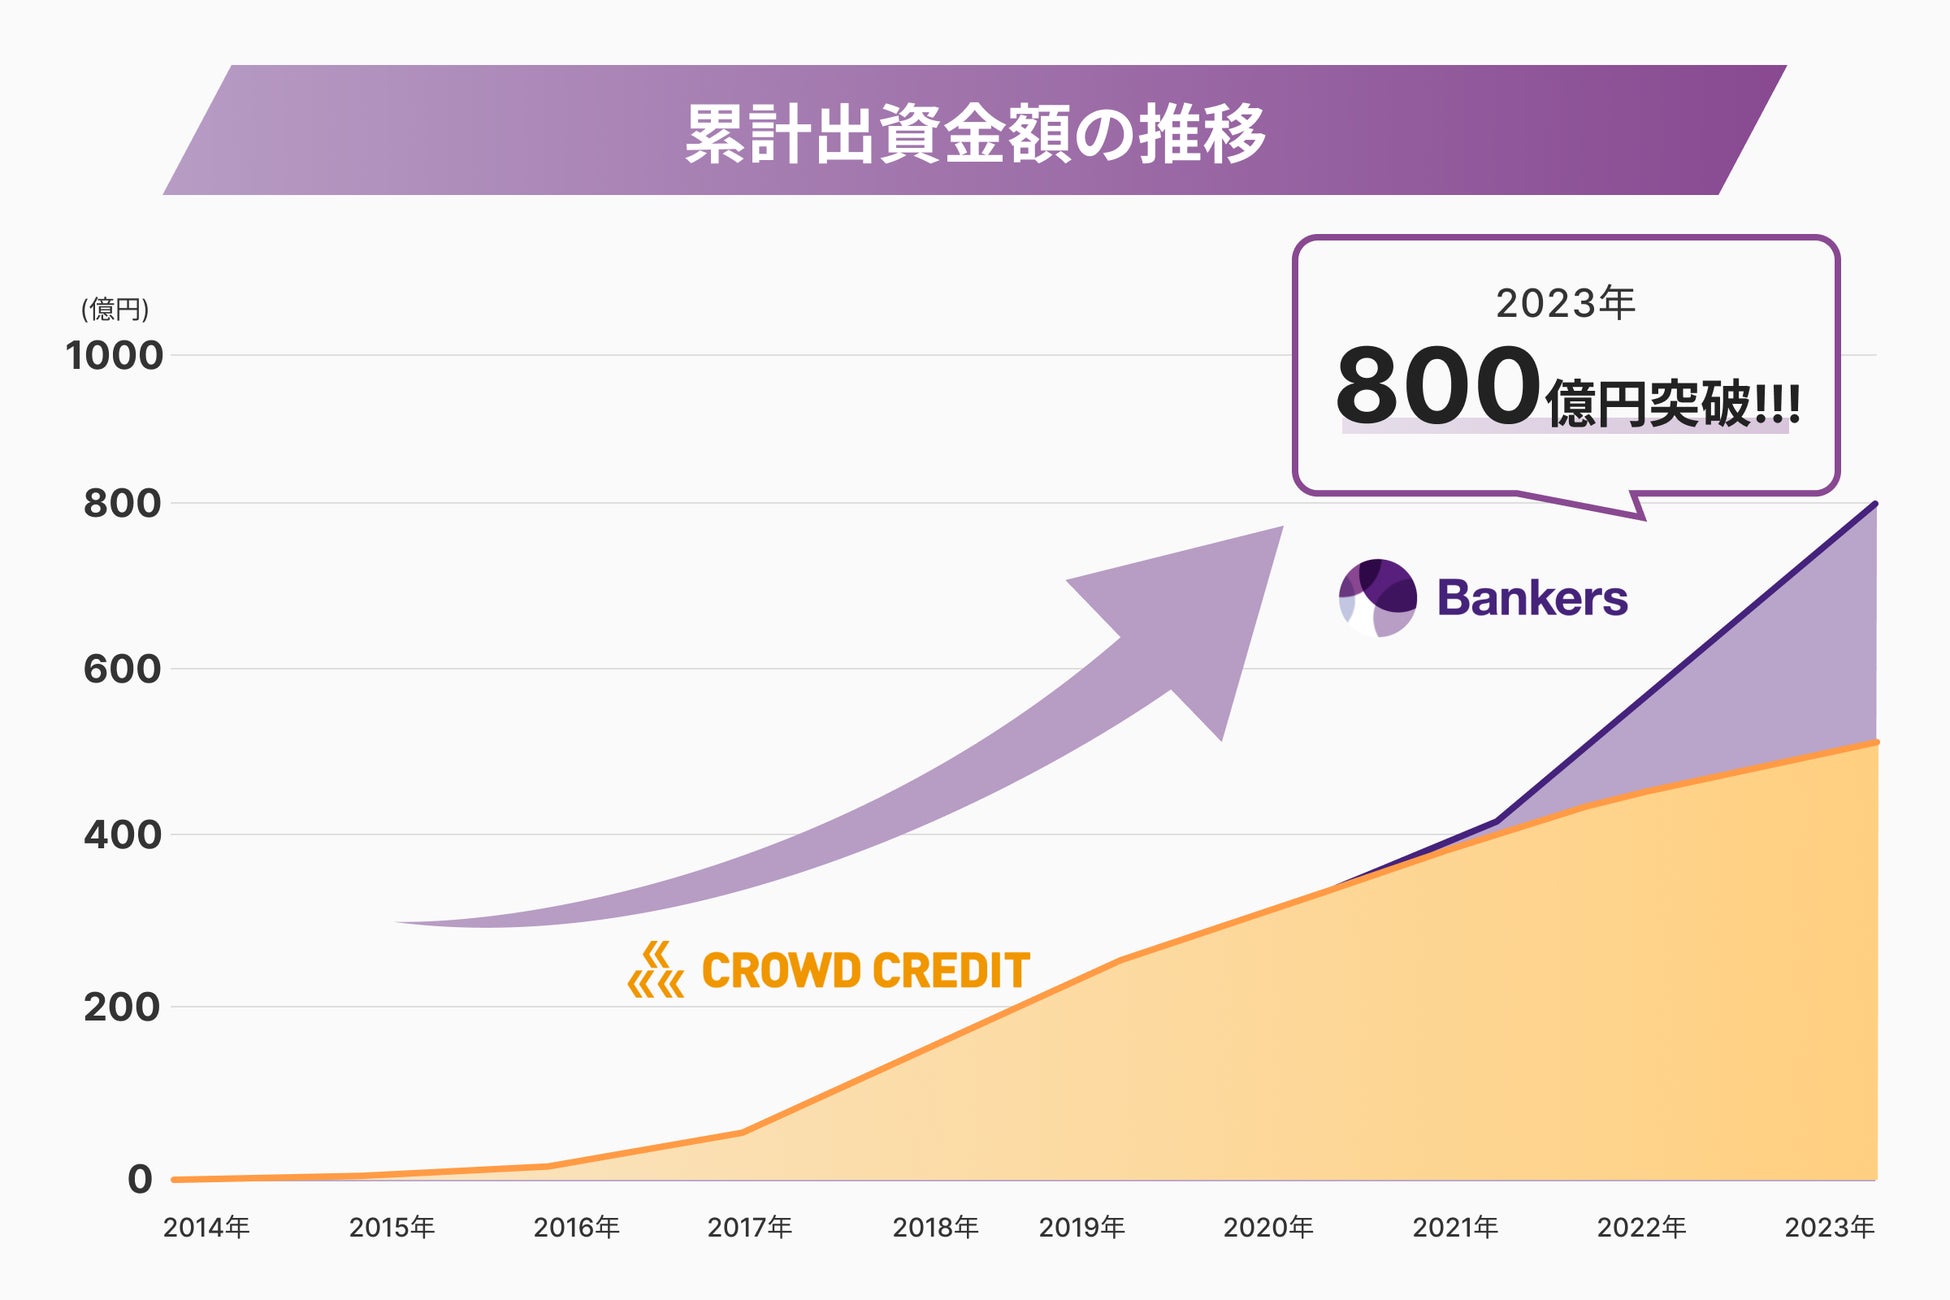 貸付型クラウドファンディングプラットフォーム「Bankers（バンカーズ）」と「Crowd Credit（クラウドクレジット）」のグループ累計出資金額が800億円を突破